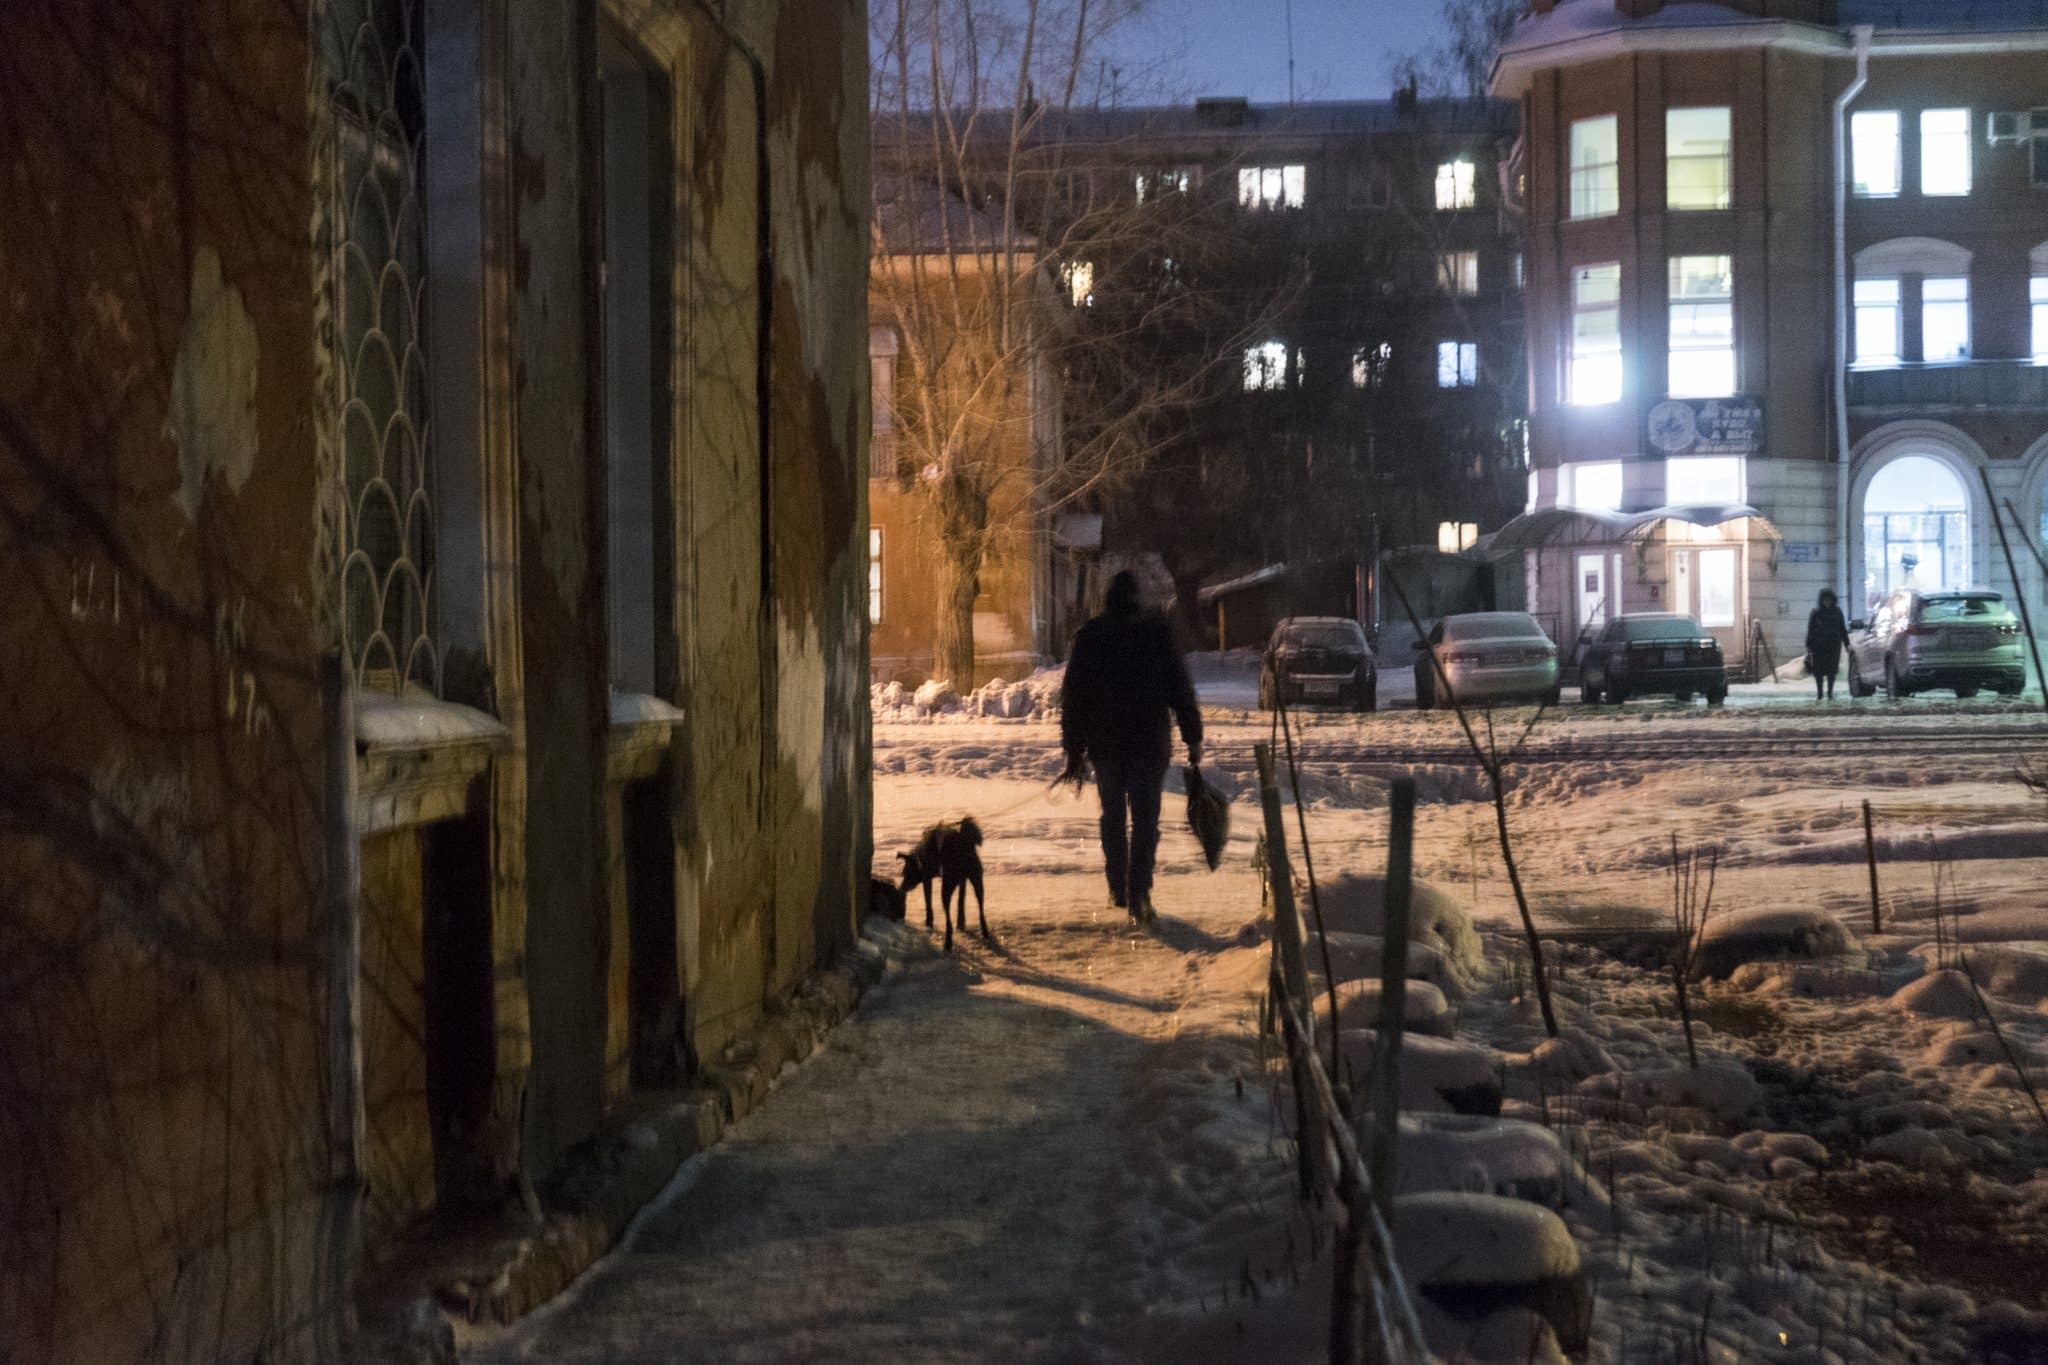 Прогулка по старому району: фоторепортаж с улицы Серова